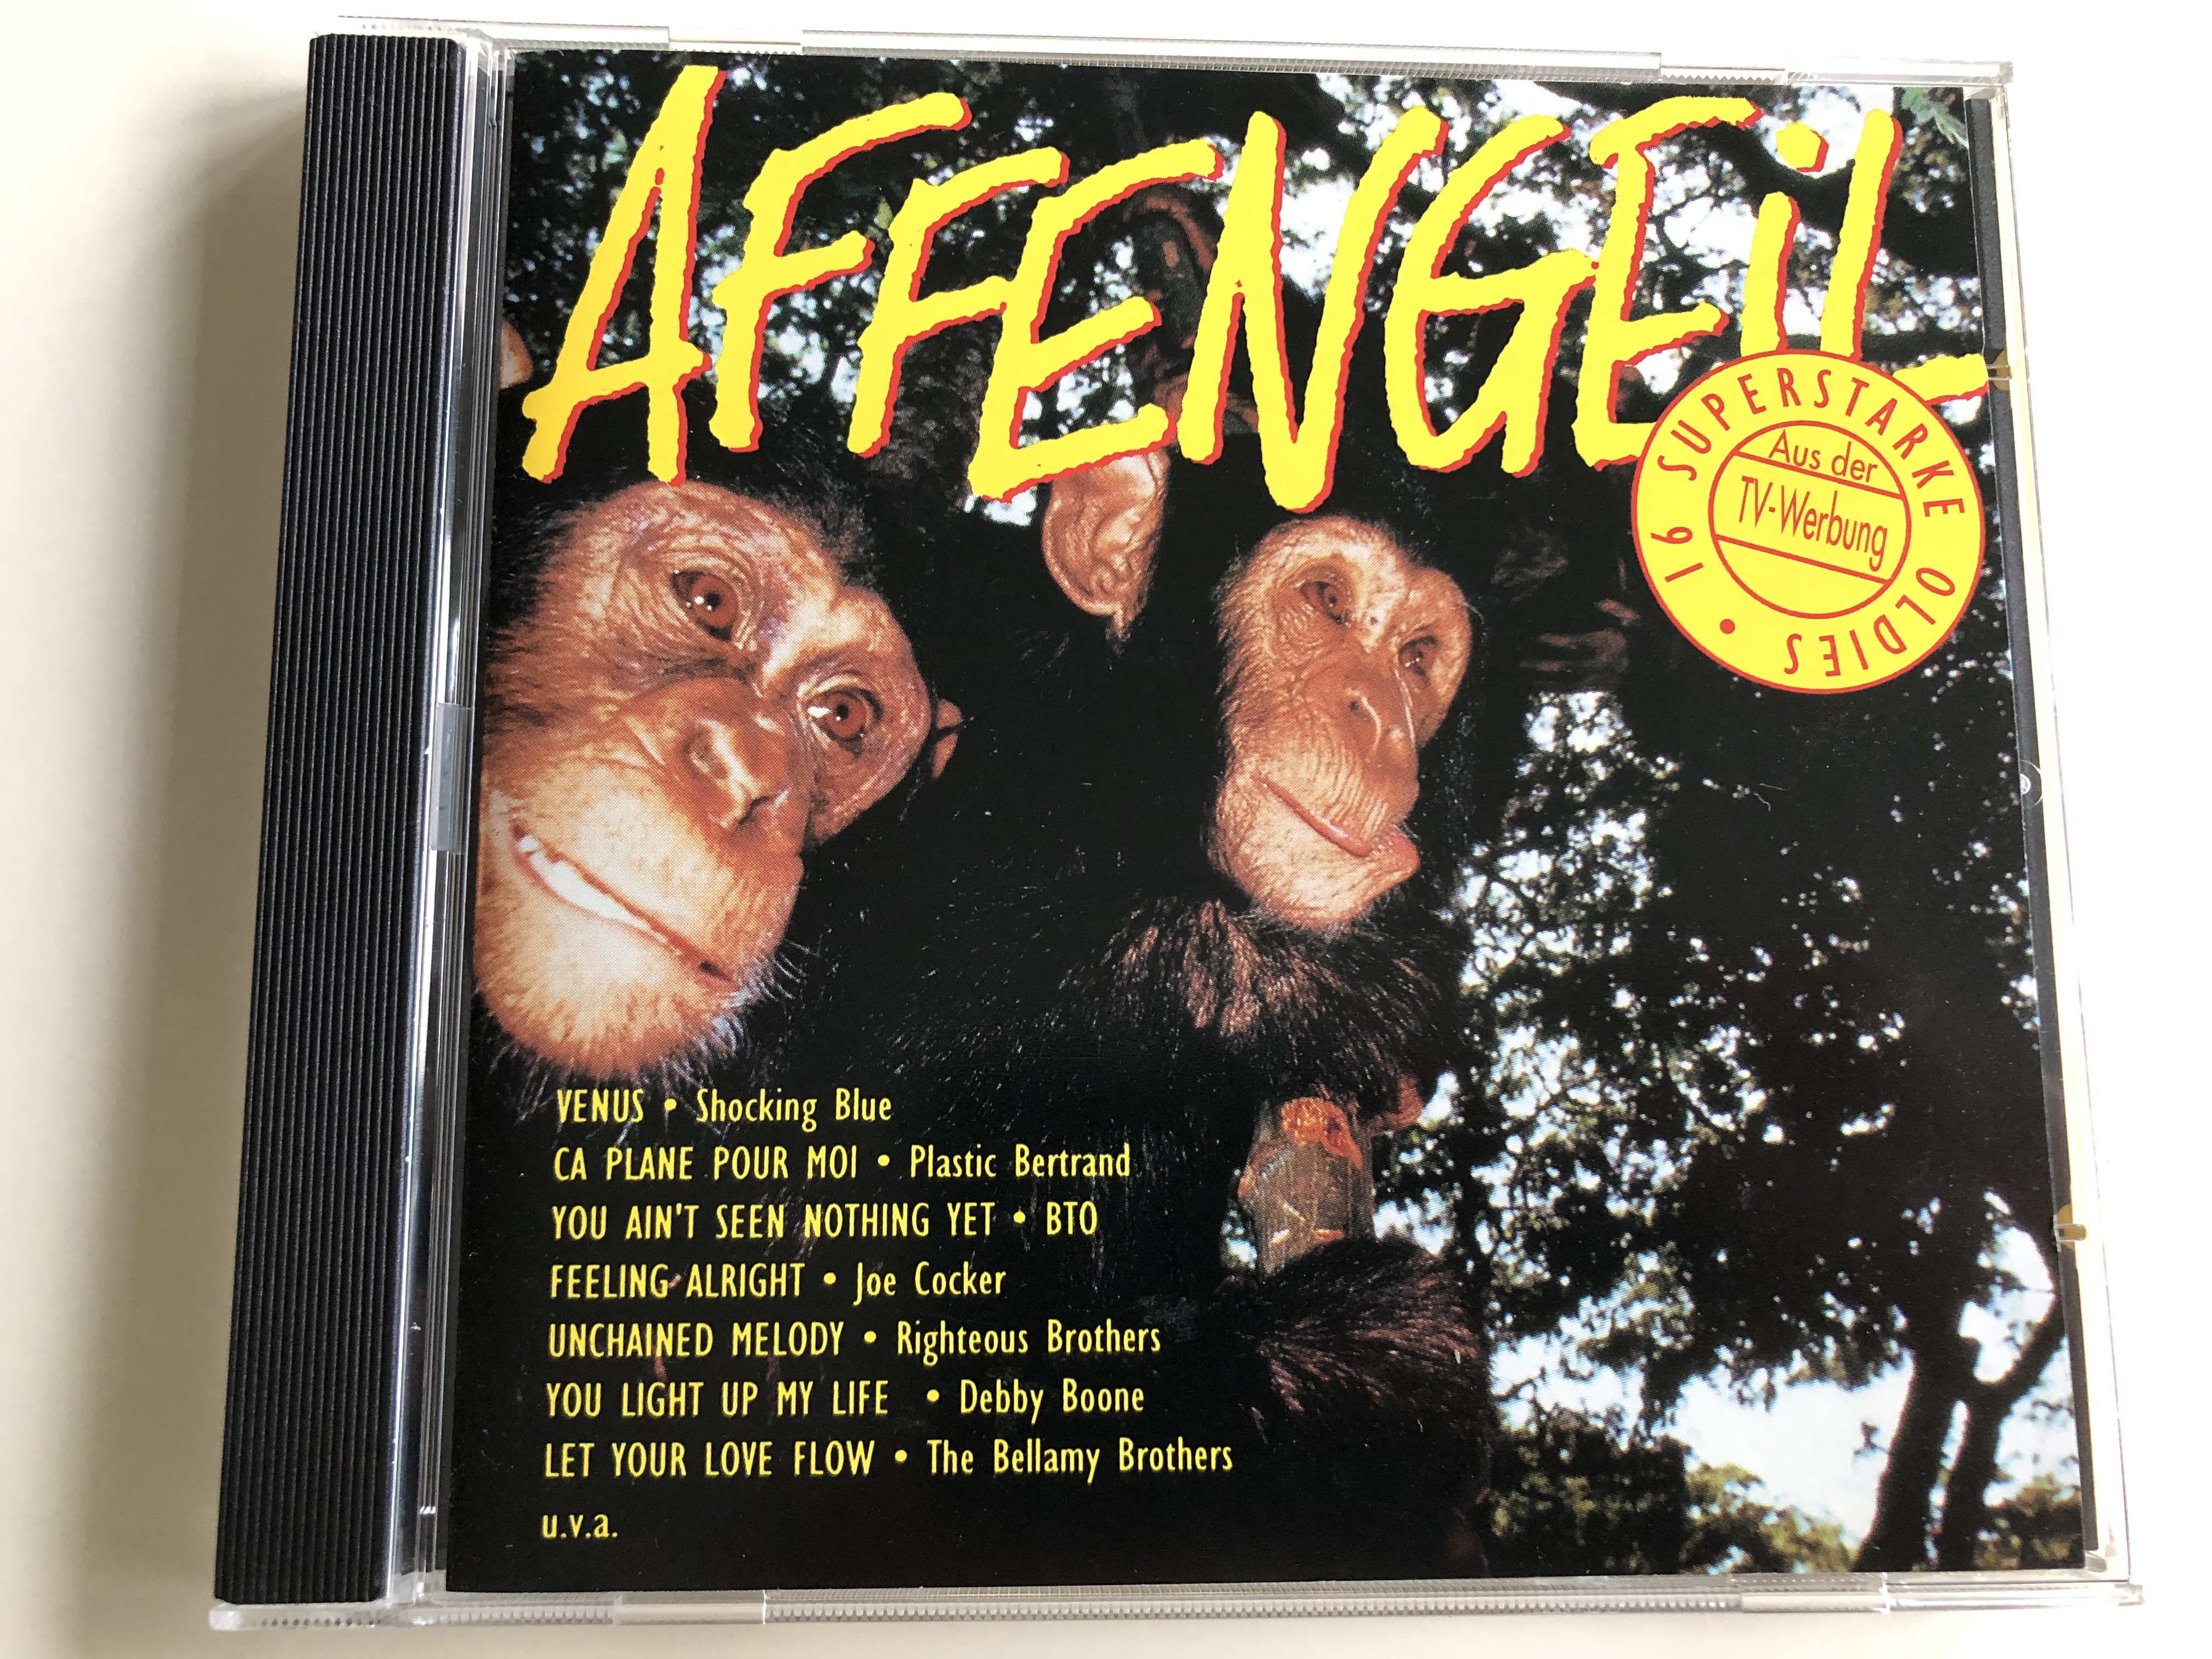 affengeil-16-superstarke-oldies-aus-der-tv-werbung-audio-cd-1993-edl2716-2-1-.jpg